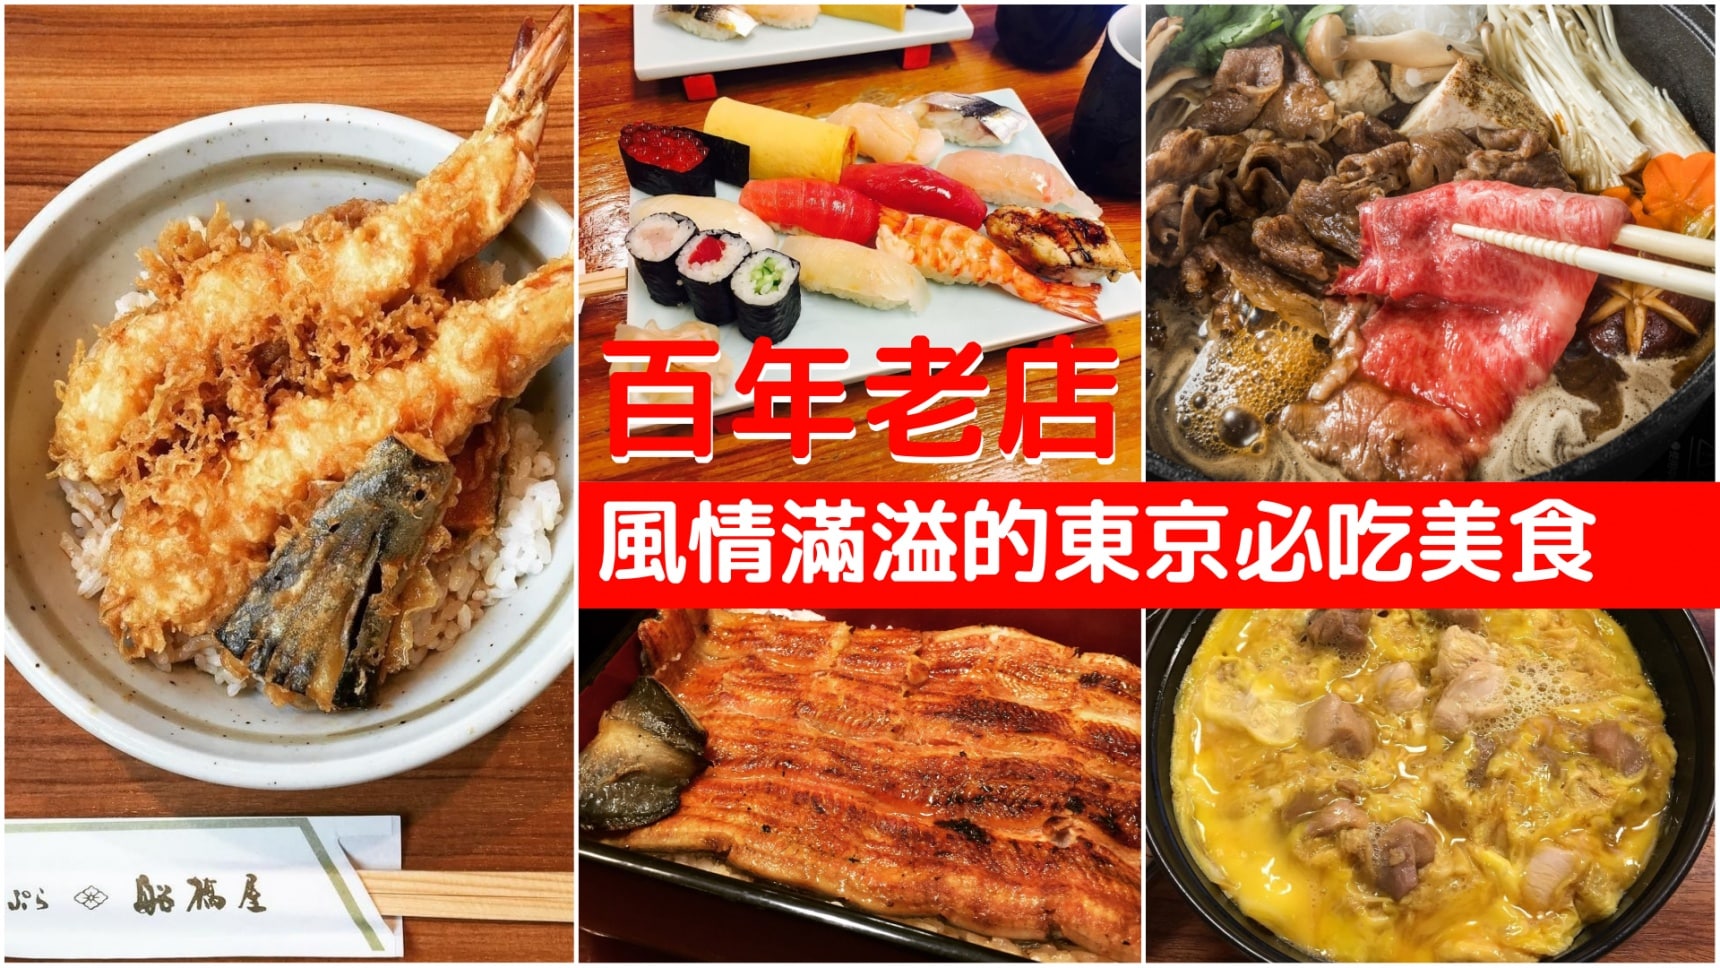 【東京美食】日本歷史風情滿溢的百年必吃老店